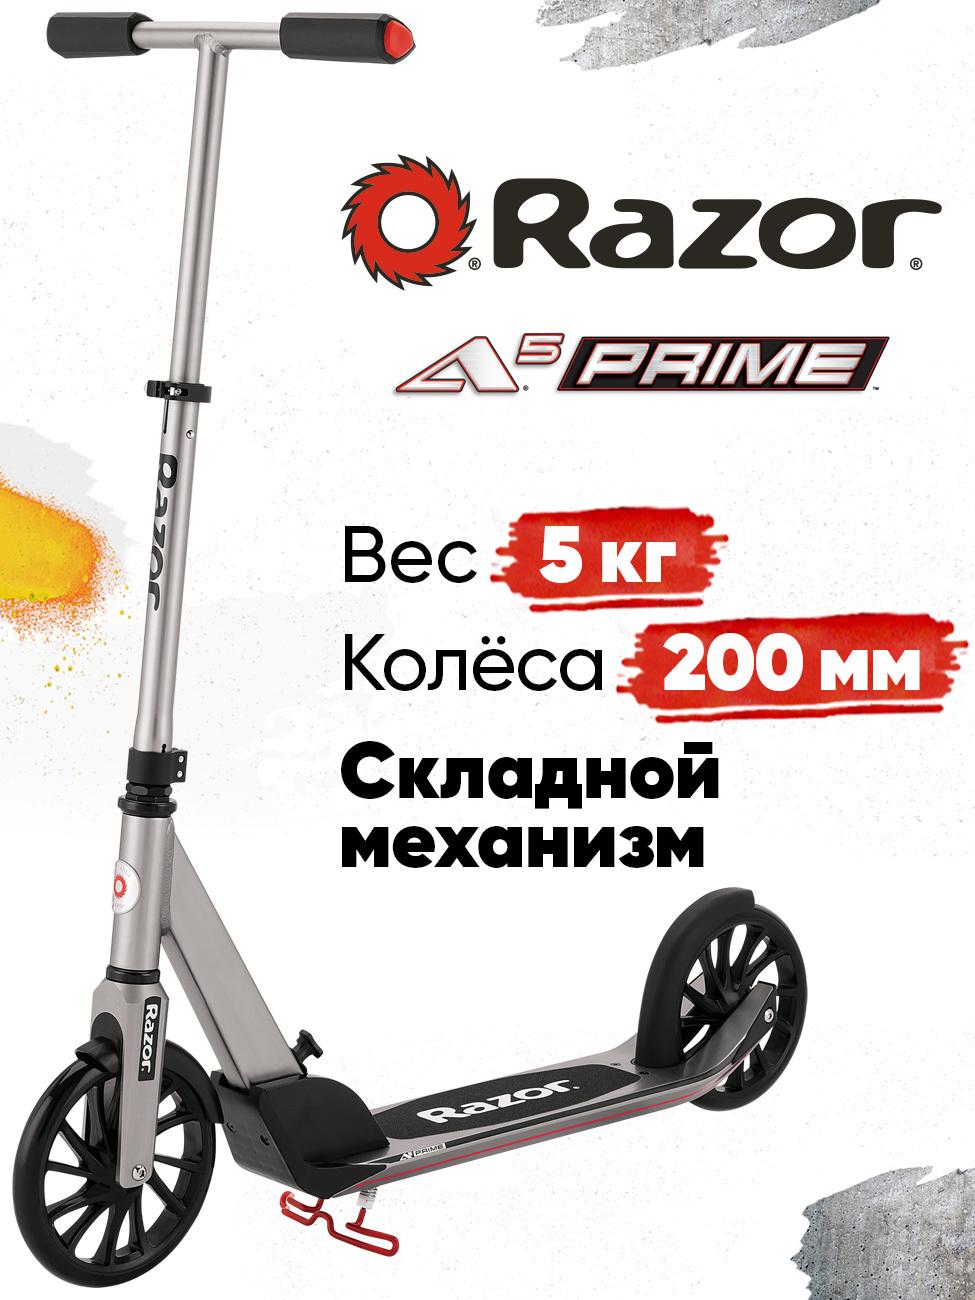 Razor | Городской складной самокат для взрослых Razor A5 Prime - серый, стильный строгий дизайн